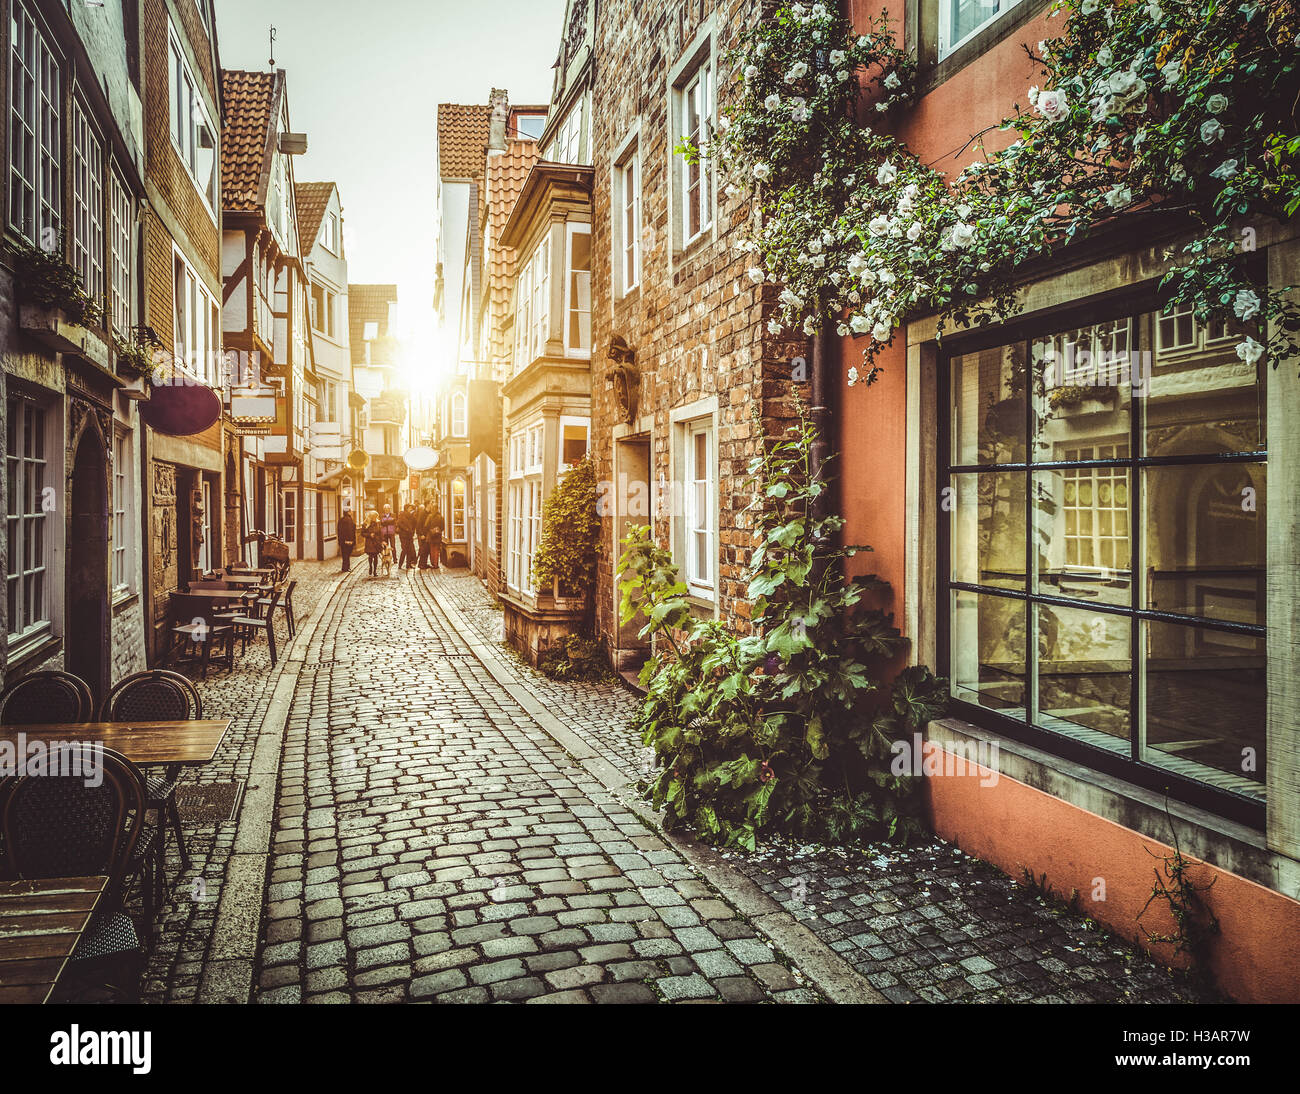 Città vecchia in Europa al tramonto con retro vintage stile Instagram filtro e lens flare effetto luce solare Foto Stock